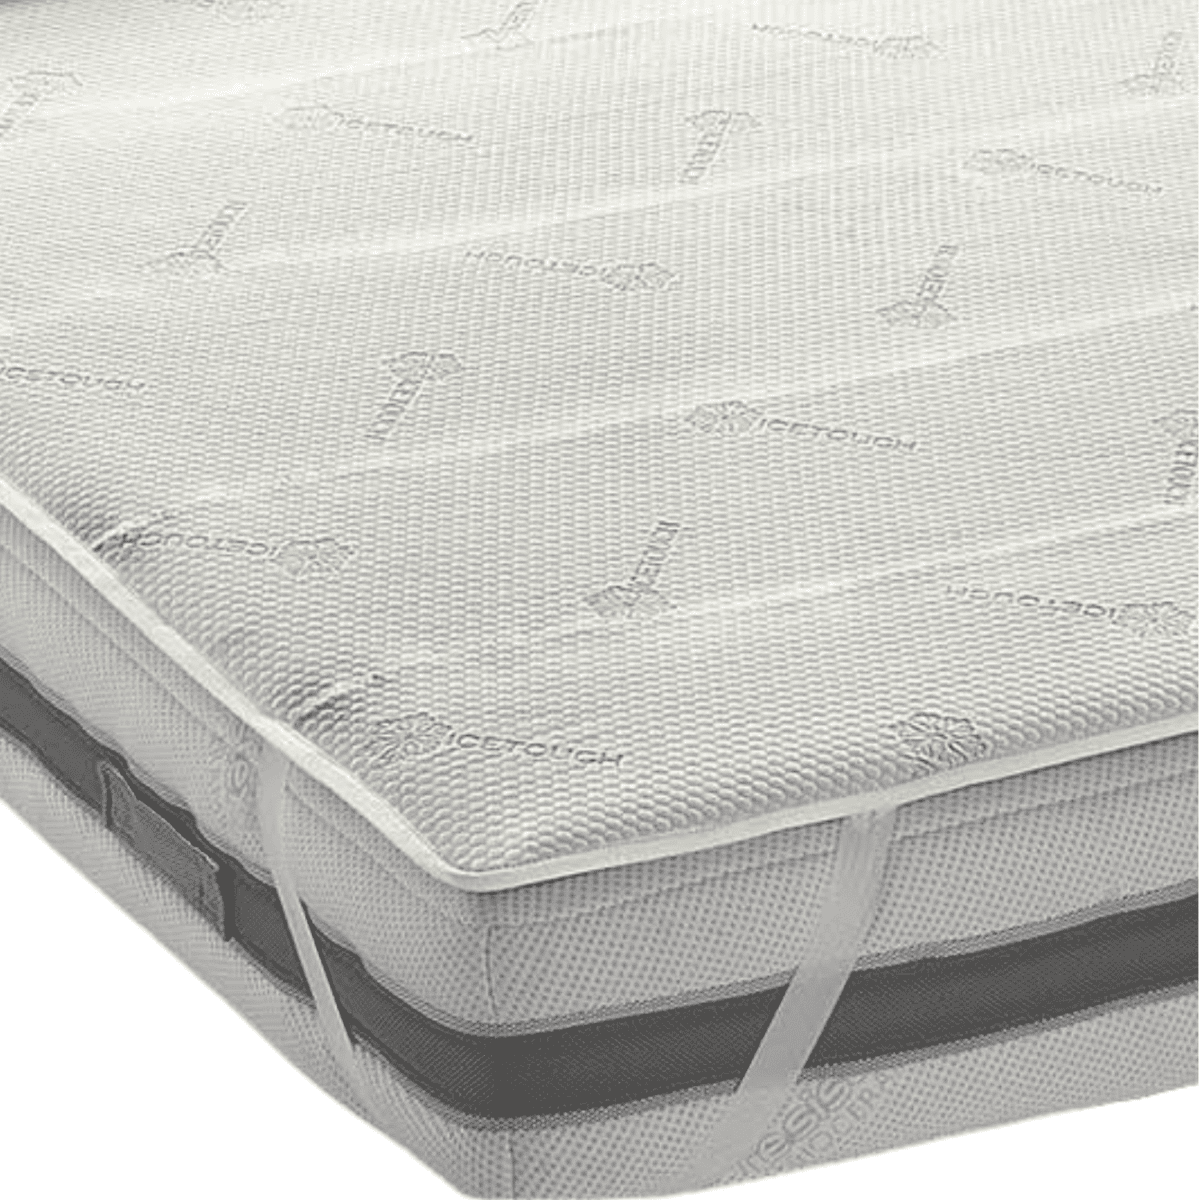 Dettaglio-Topper-thermo-solution-double-freddo-caldo-microfibra-traspirante-antibatterico-termoregolazione-ice-touch-made-in-italy-1-piazza-2-piazze-½-maxi